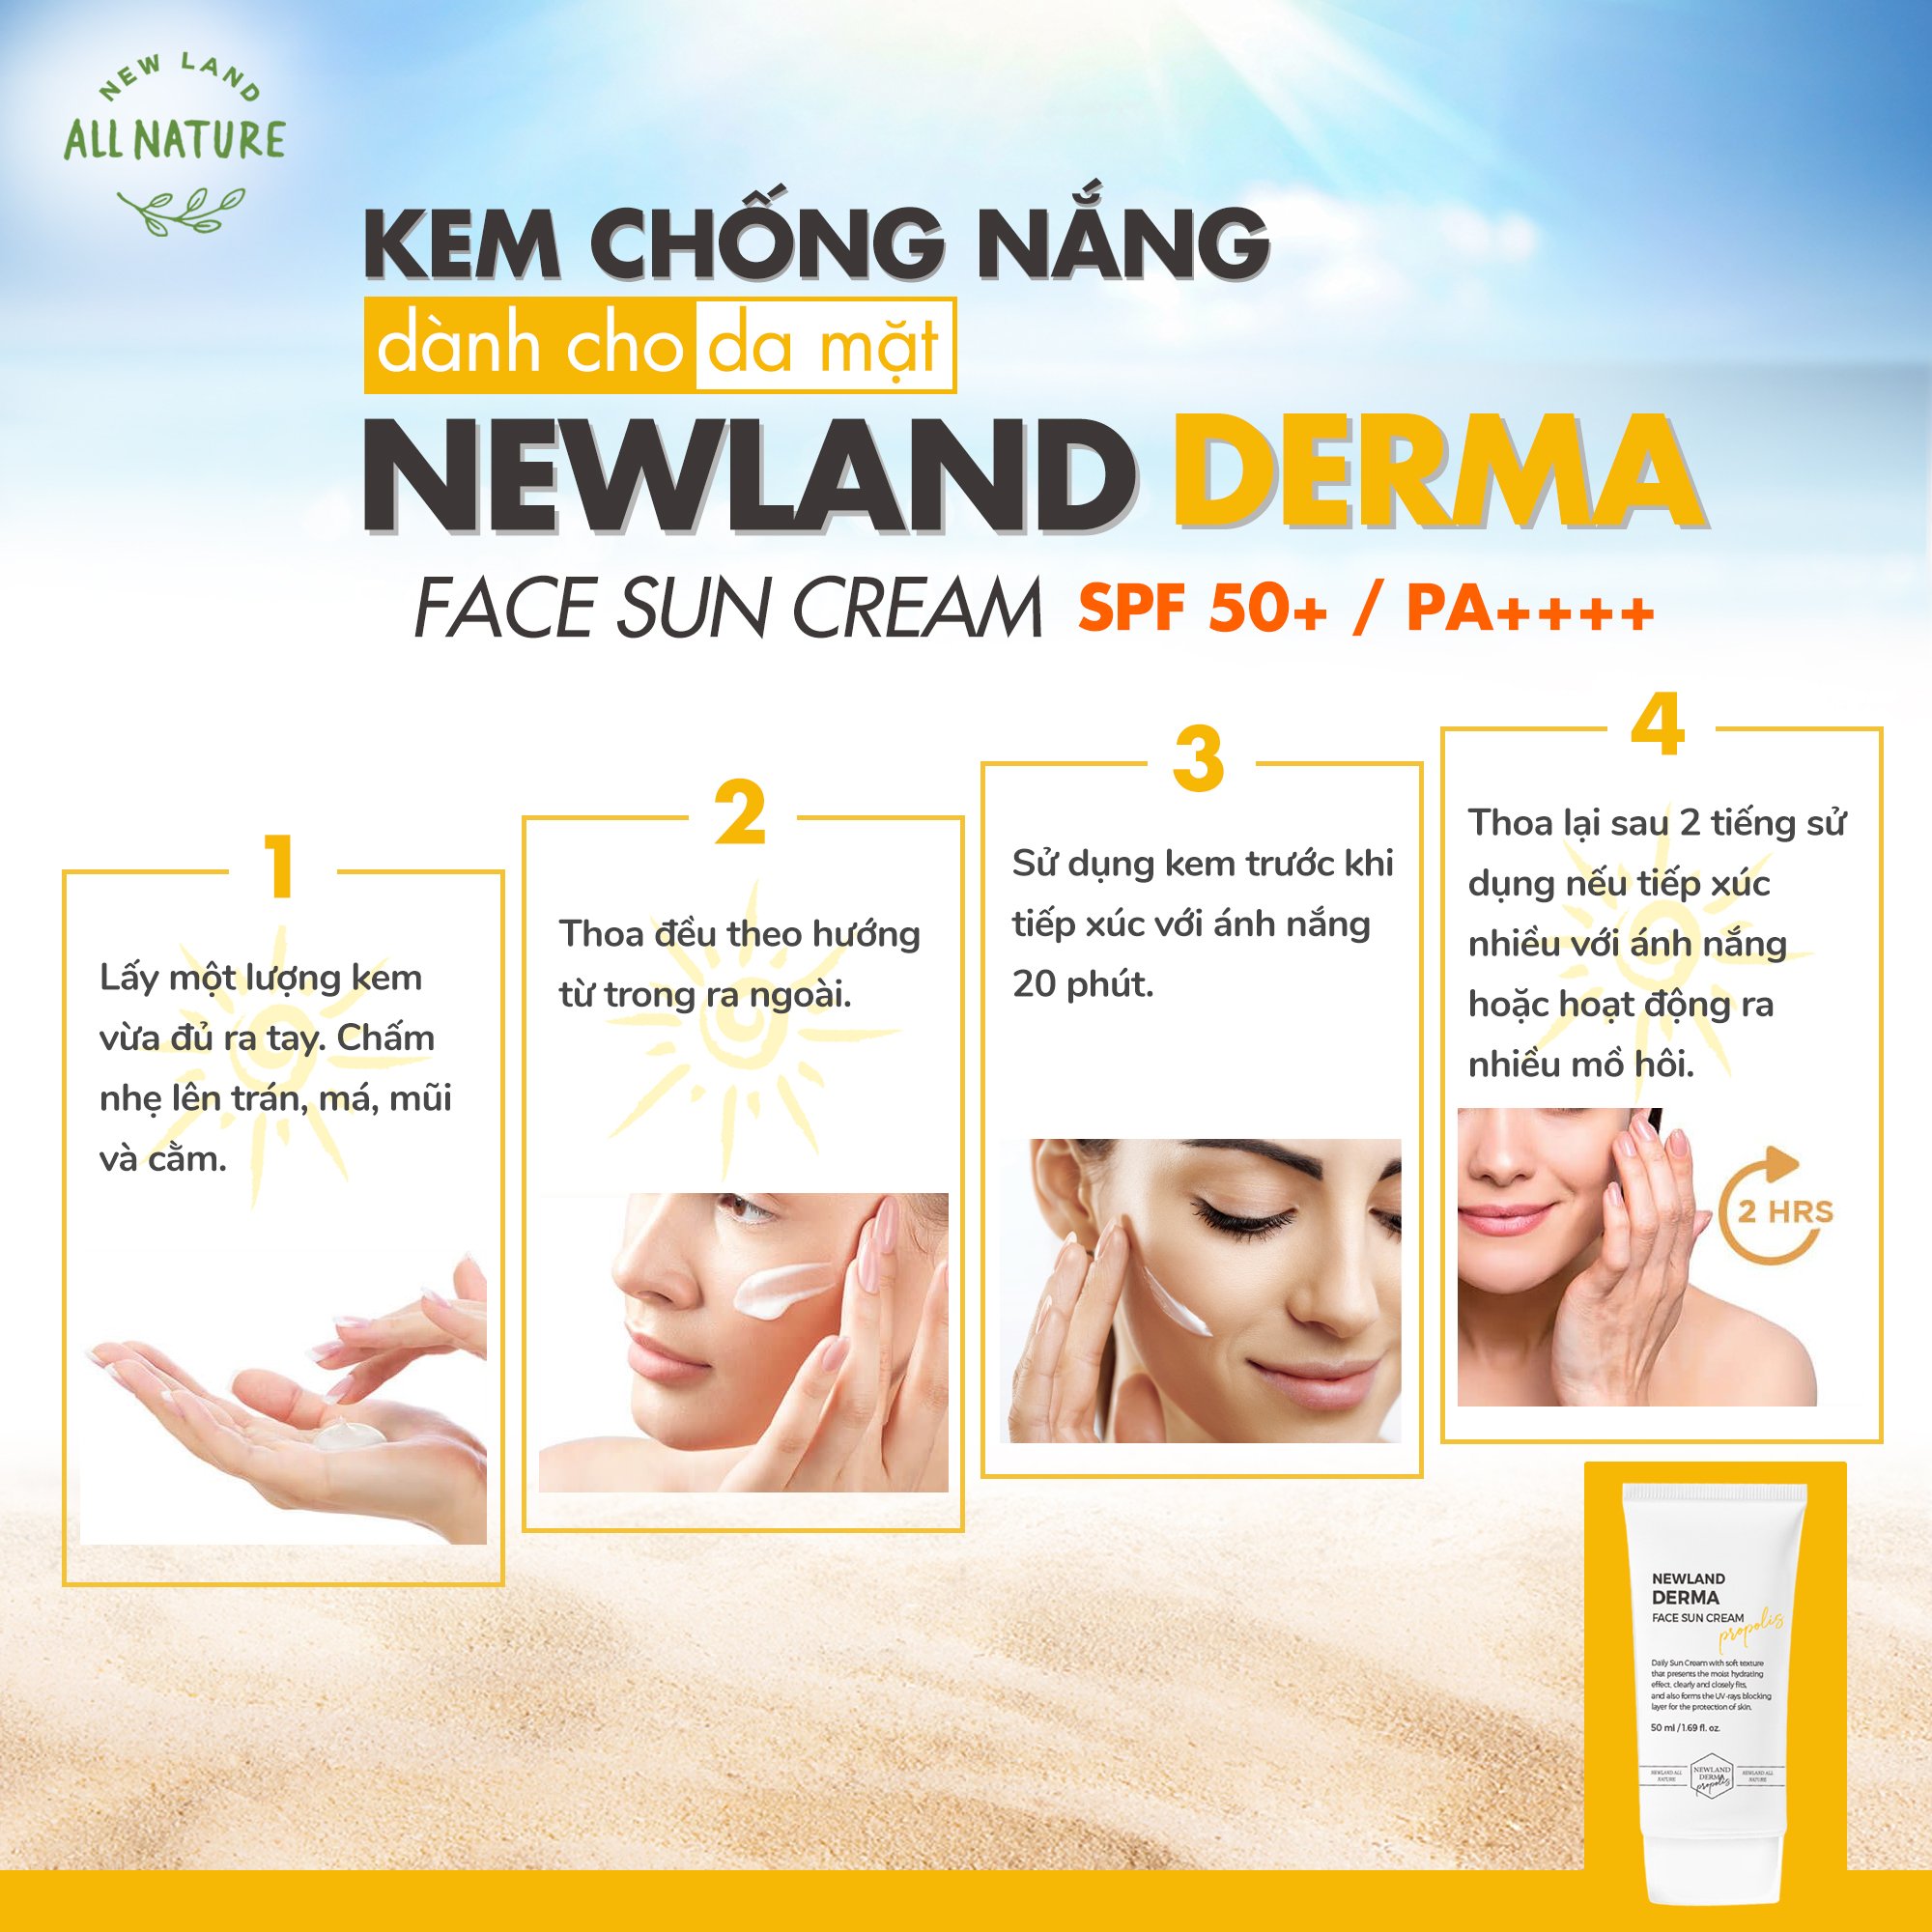 https://photo.salekit.com/uploads/salekit_413fef099d41eb62d51a8f6e8956743b/kem-chong-nang-da-mat-newland-derma-face-sun-cream-3.jpg